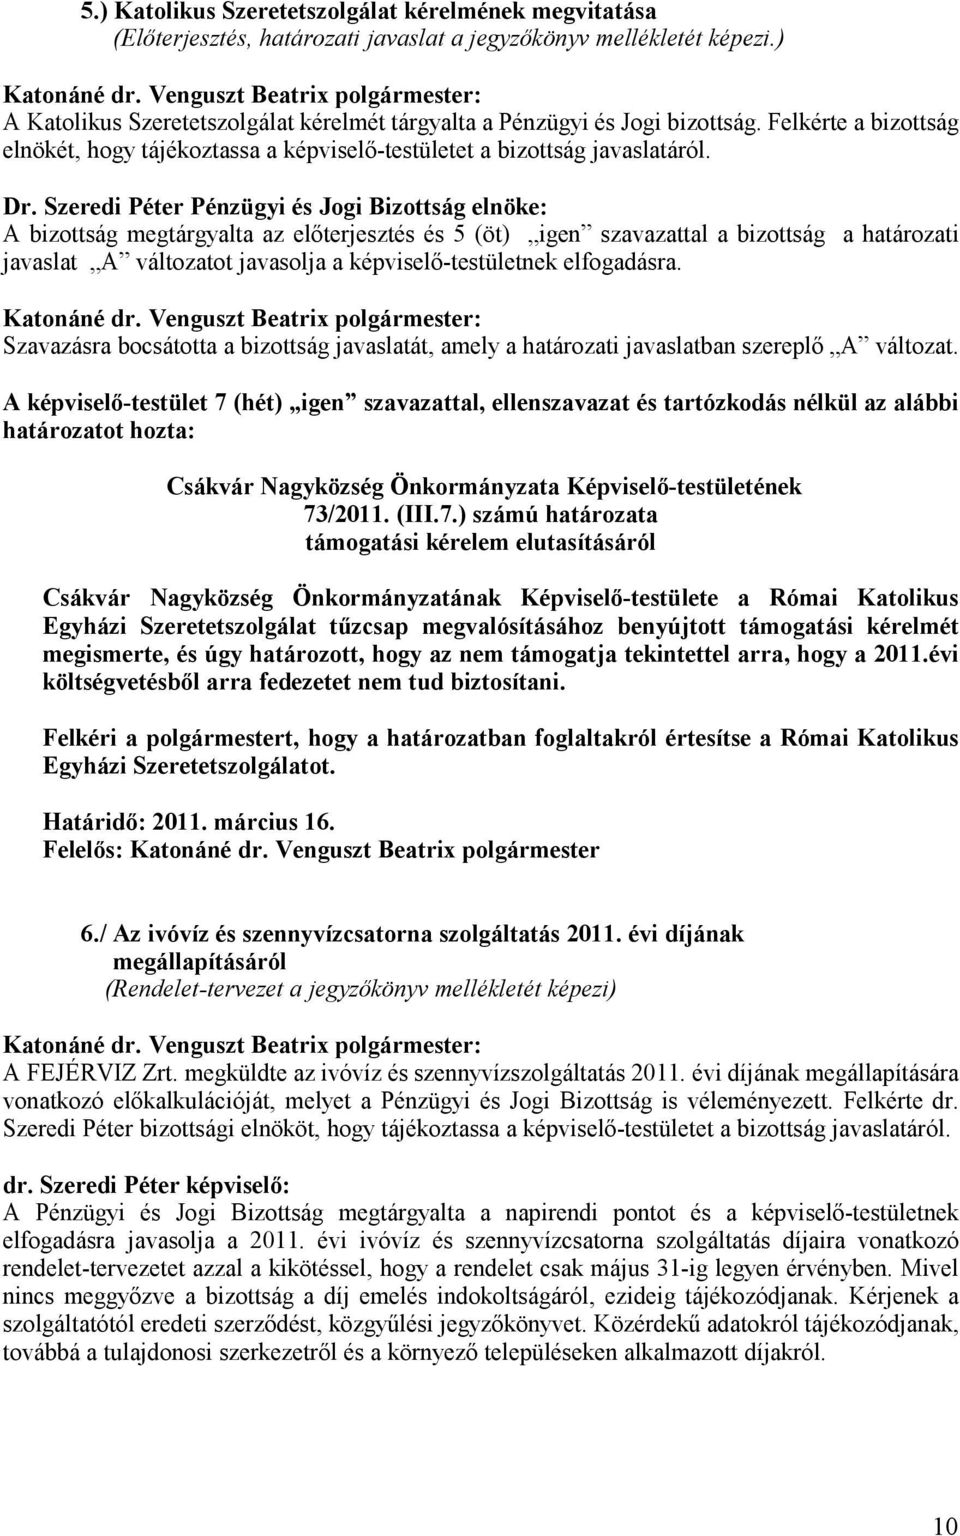 Szeredi Péter Pénzügyi és Jogi Bizottság elnöke: A bizottság megtárgyalta az elıterjesztés és 5 (öt) igen szavazattal a bizottság a határozati javaslat A változatot javasolja a képviselı-testületnek